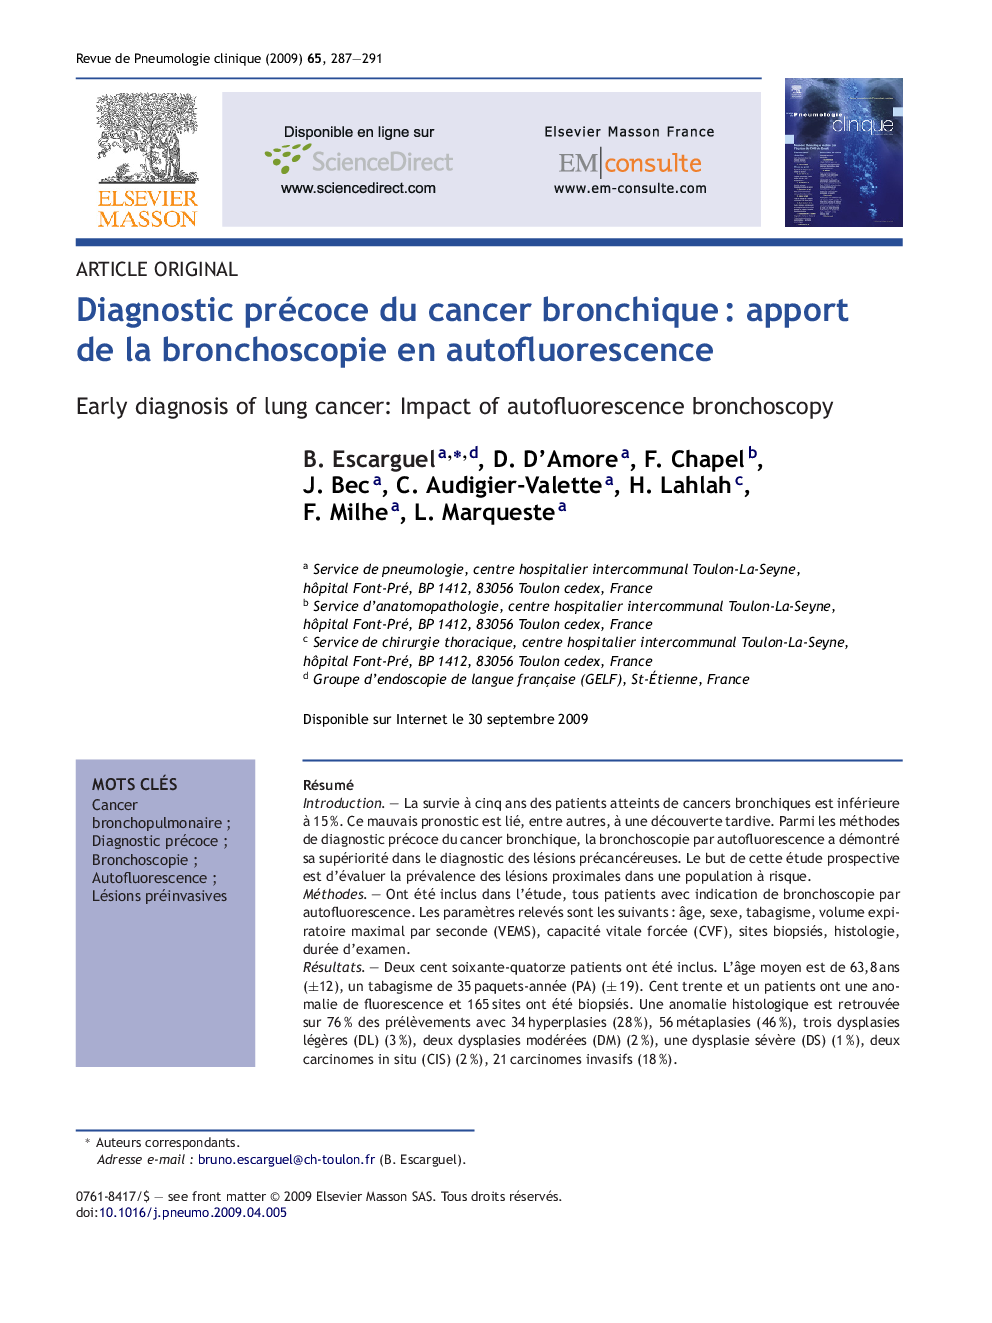 Diagnostic précoce du cancer bronchiqueÂ : apport de la bronchoscopie en autofluorescence